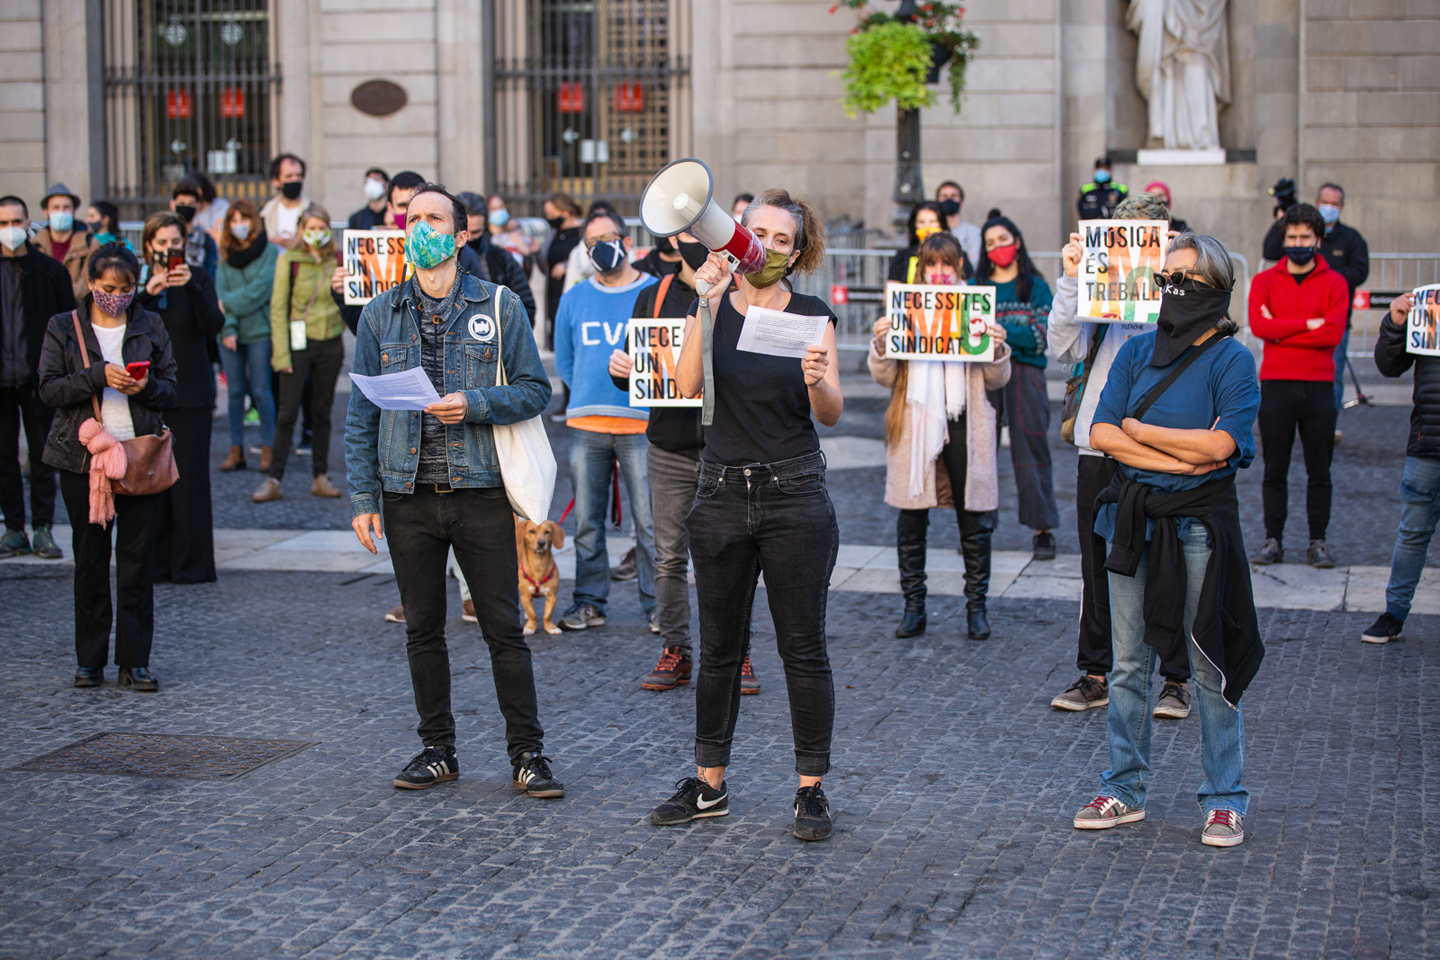 Les treballadores de la cultura de Catalunya uneixen forces contra les restriccions i el repartiment d'ajuts "sense rumb"